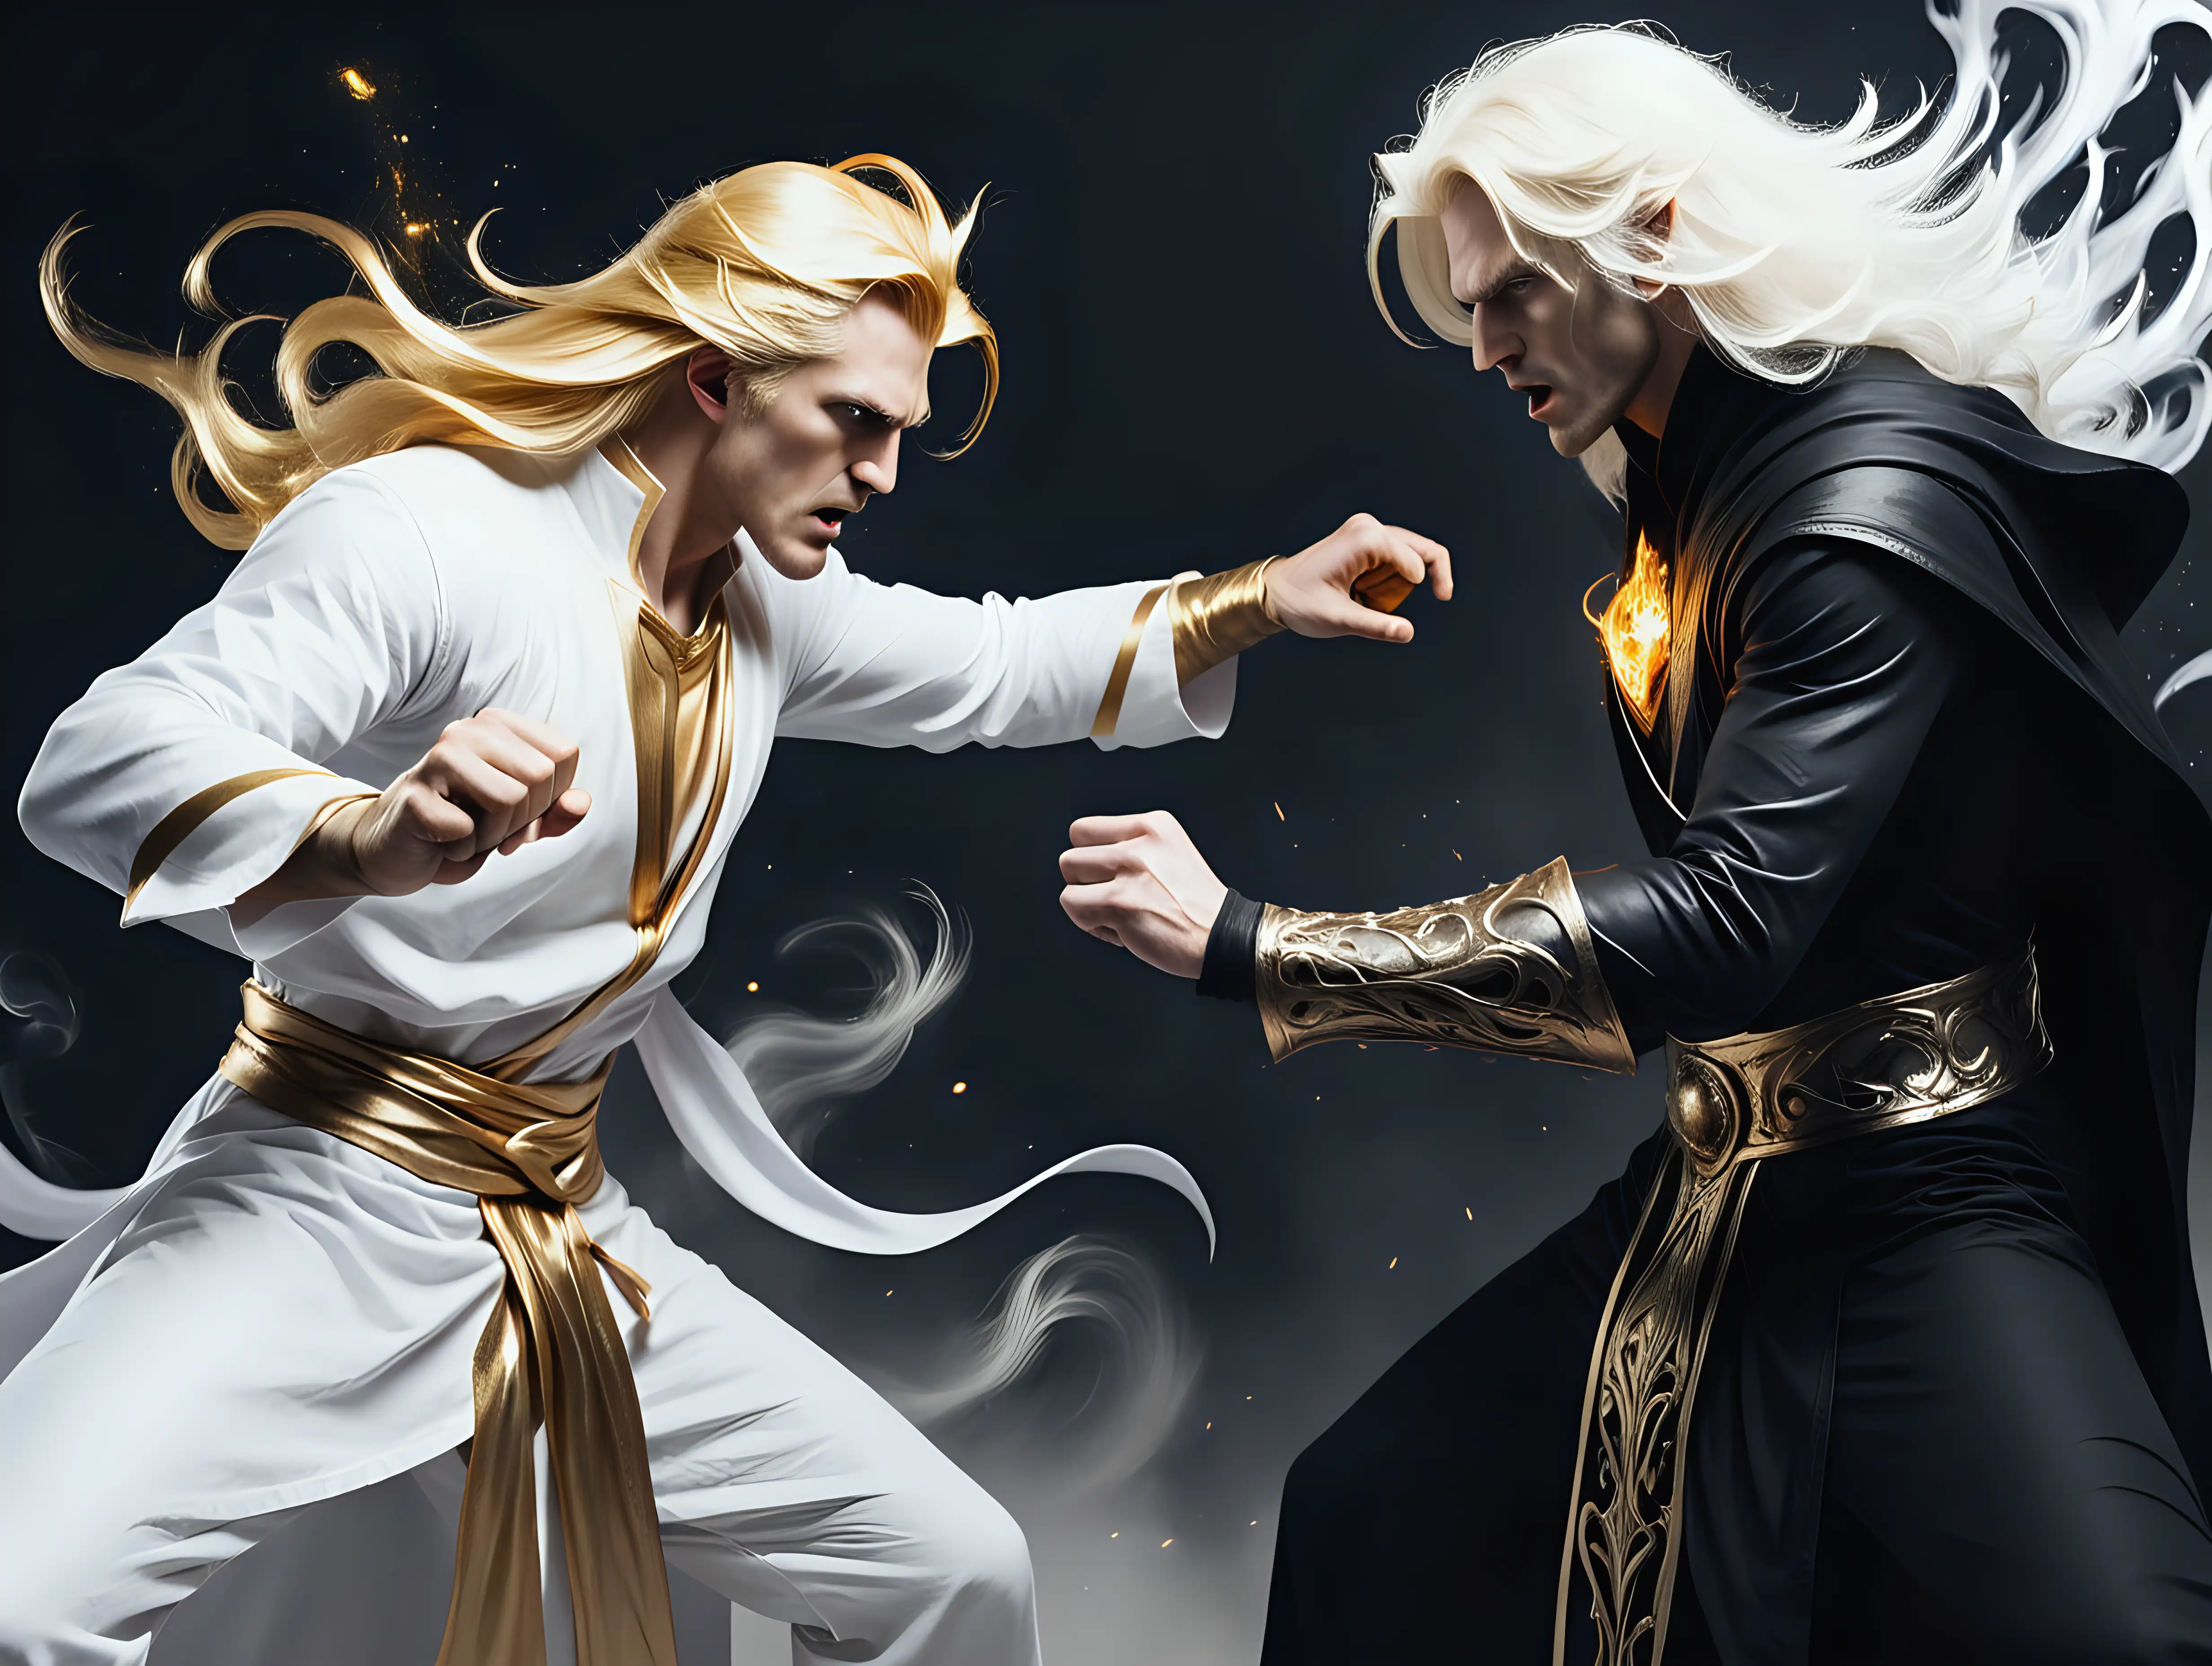 Epic-Battle-of-Sorcerers-Goldenhaired-Sorcerer-vs-Whitehaired-Sorcerer